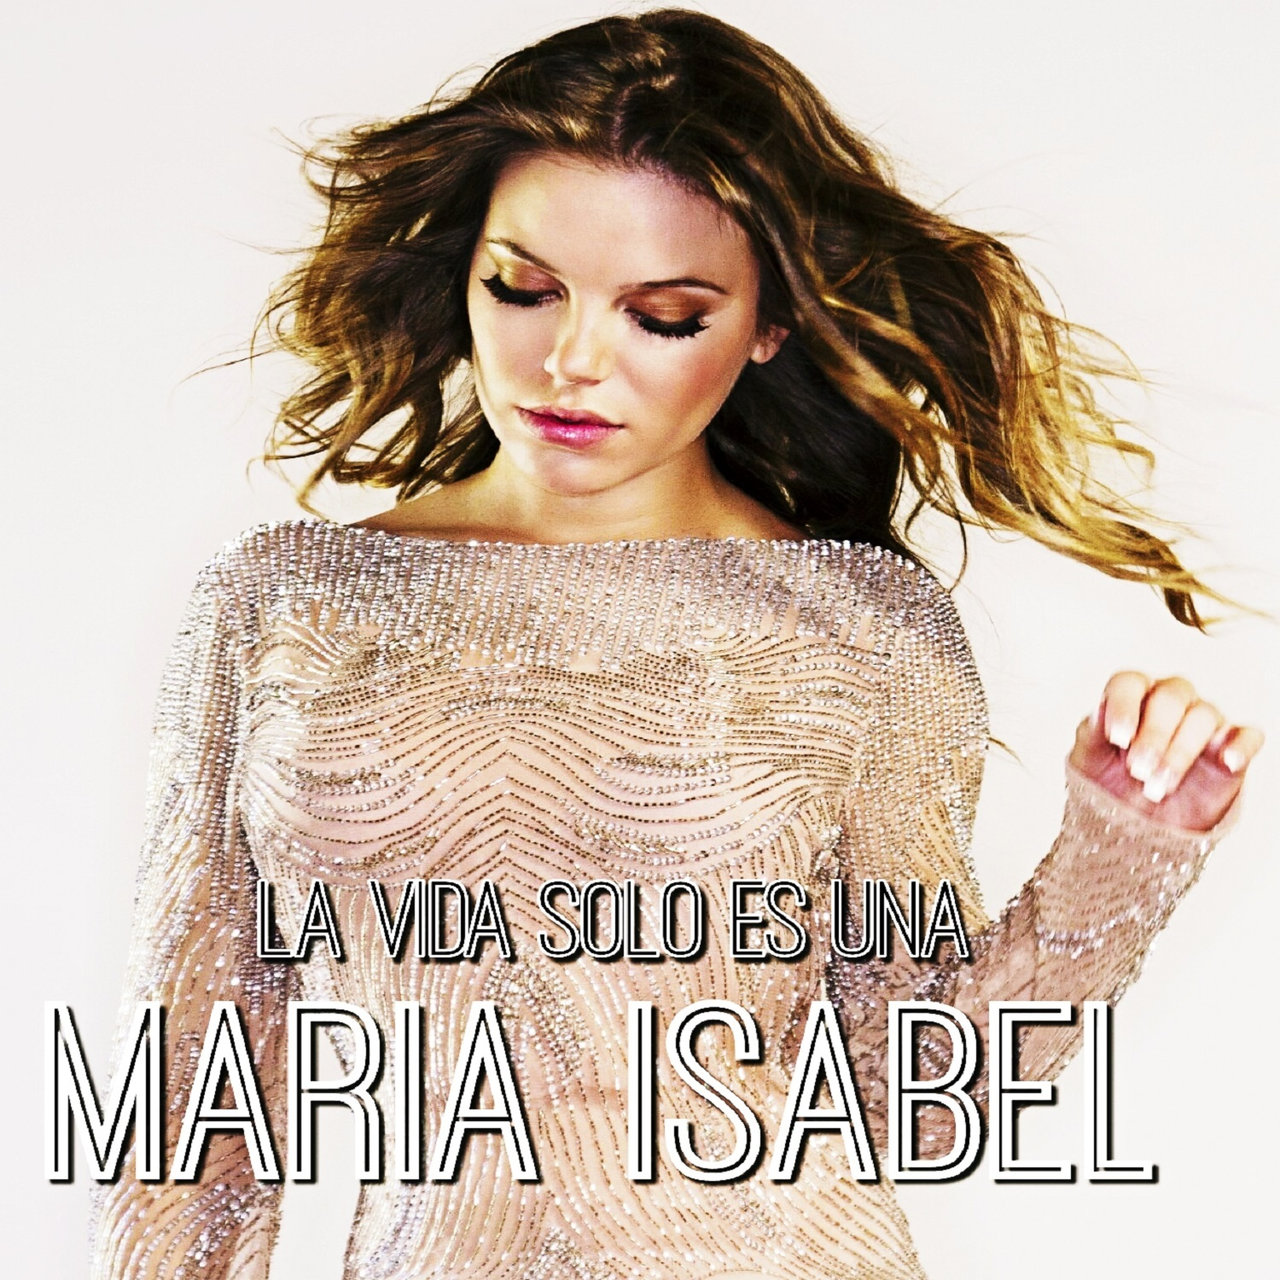 María Isabel La Vida Sólo Es Una cover artwork